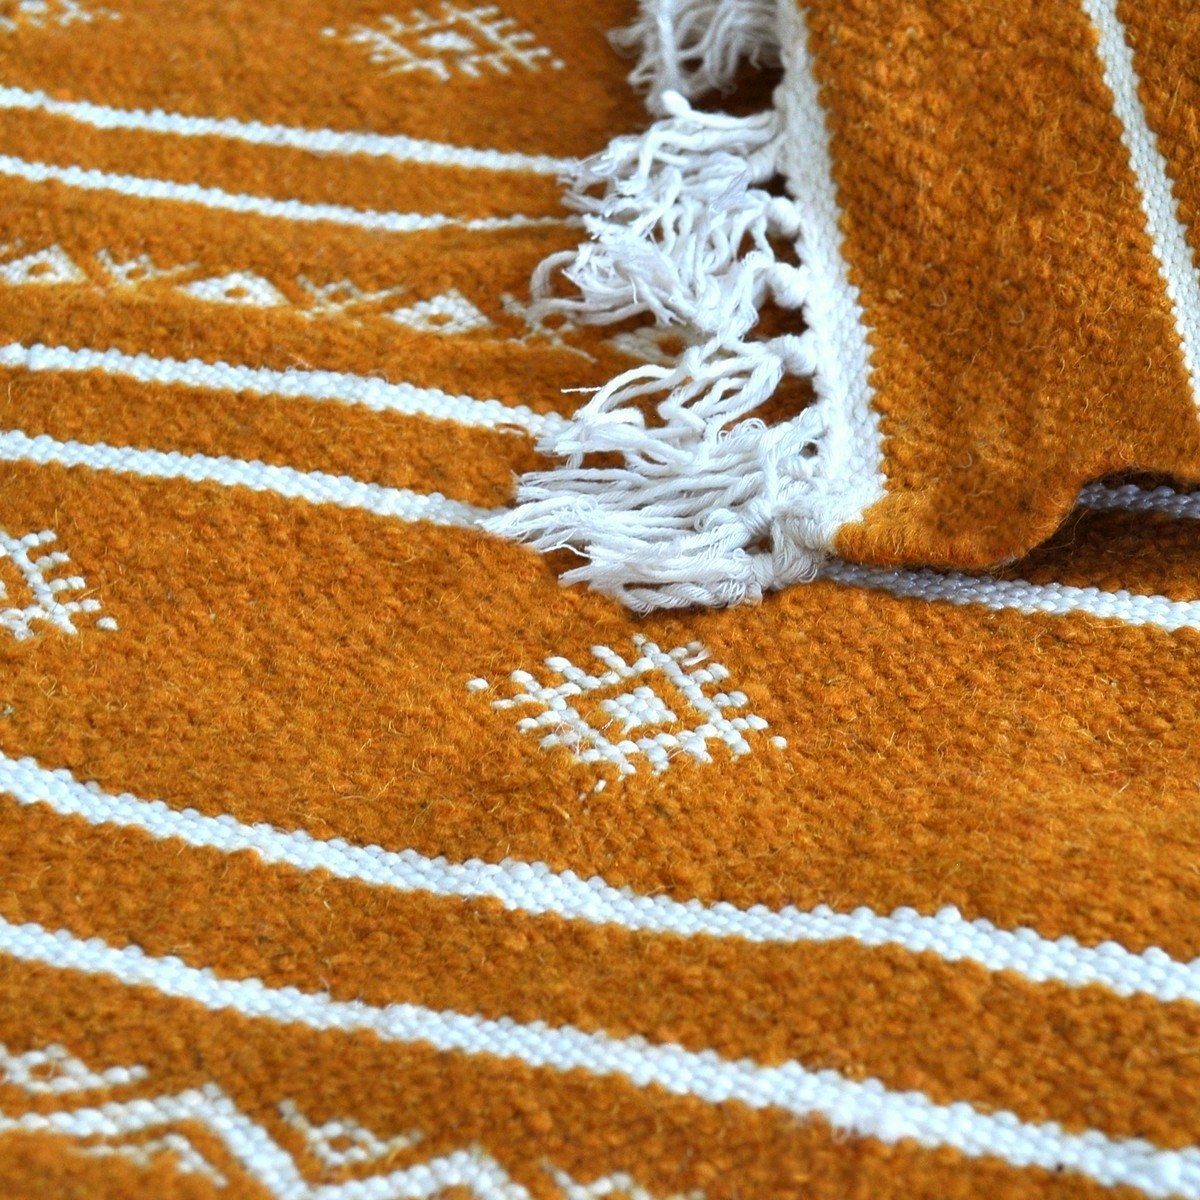 Tapis berbère Tapis Kilim Idleb 60x115 Jaune ocre (Tissé main, Laine, Tunisie) Tapis kilim tunisien style tapis marocain. Tapis 